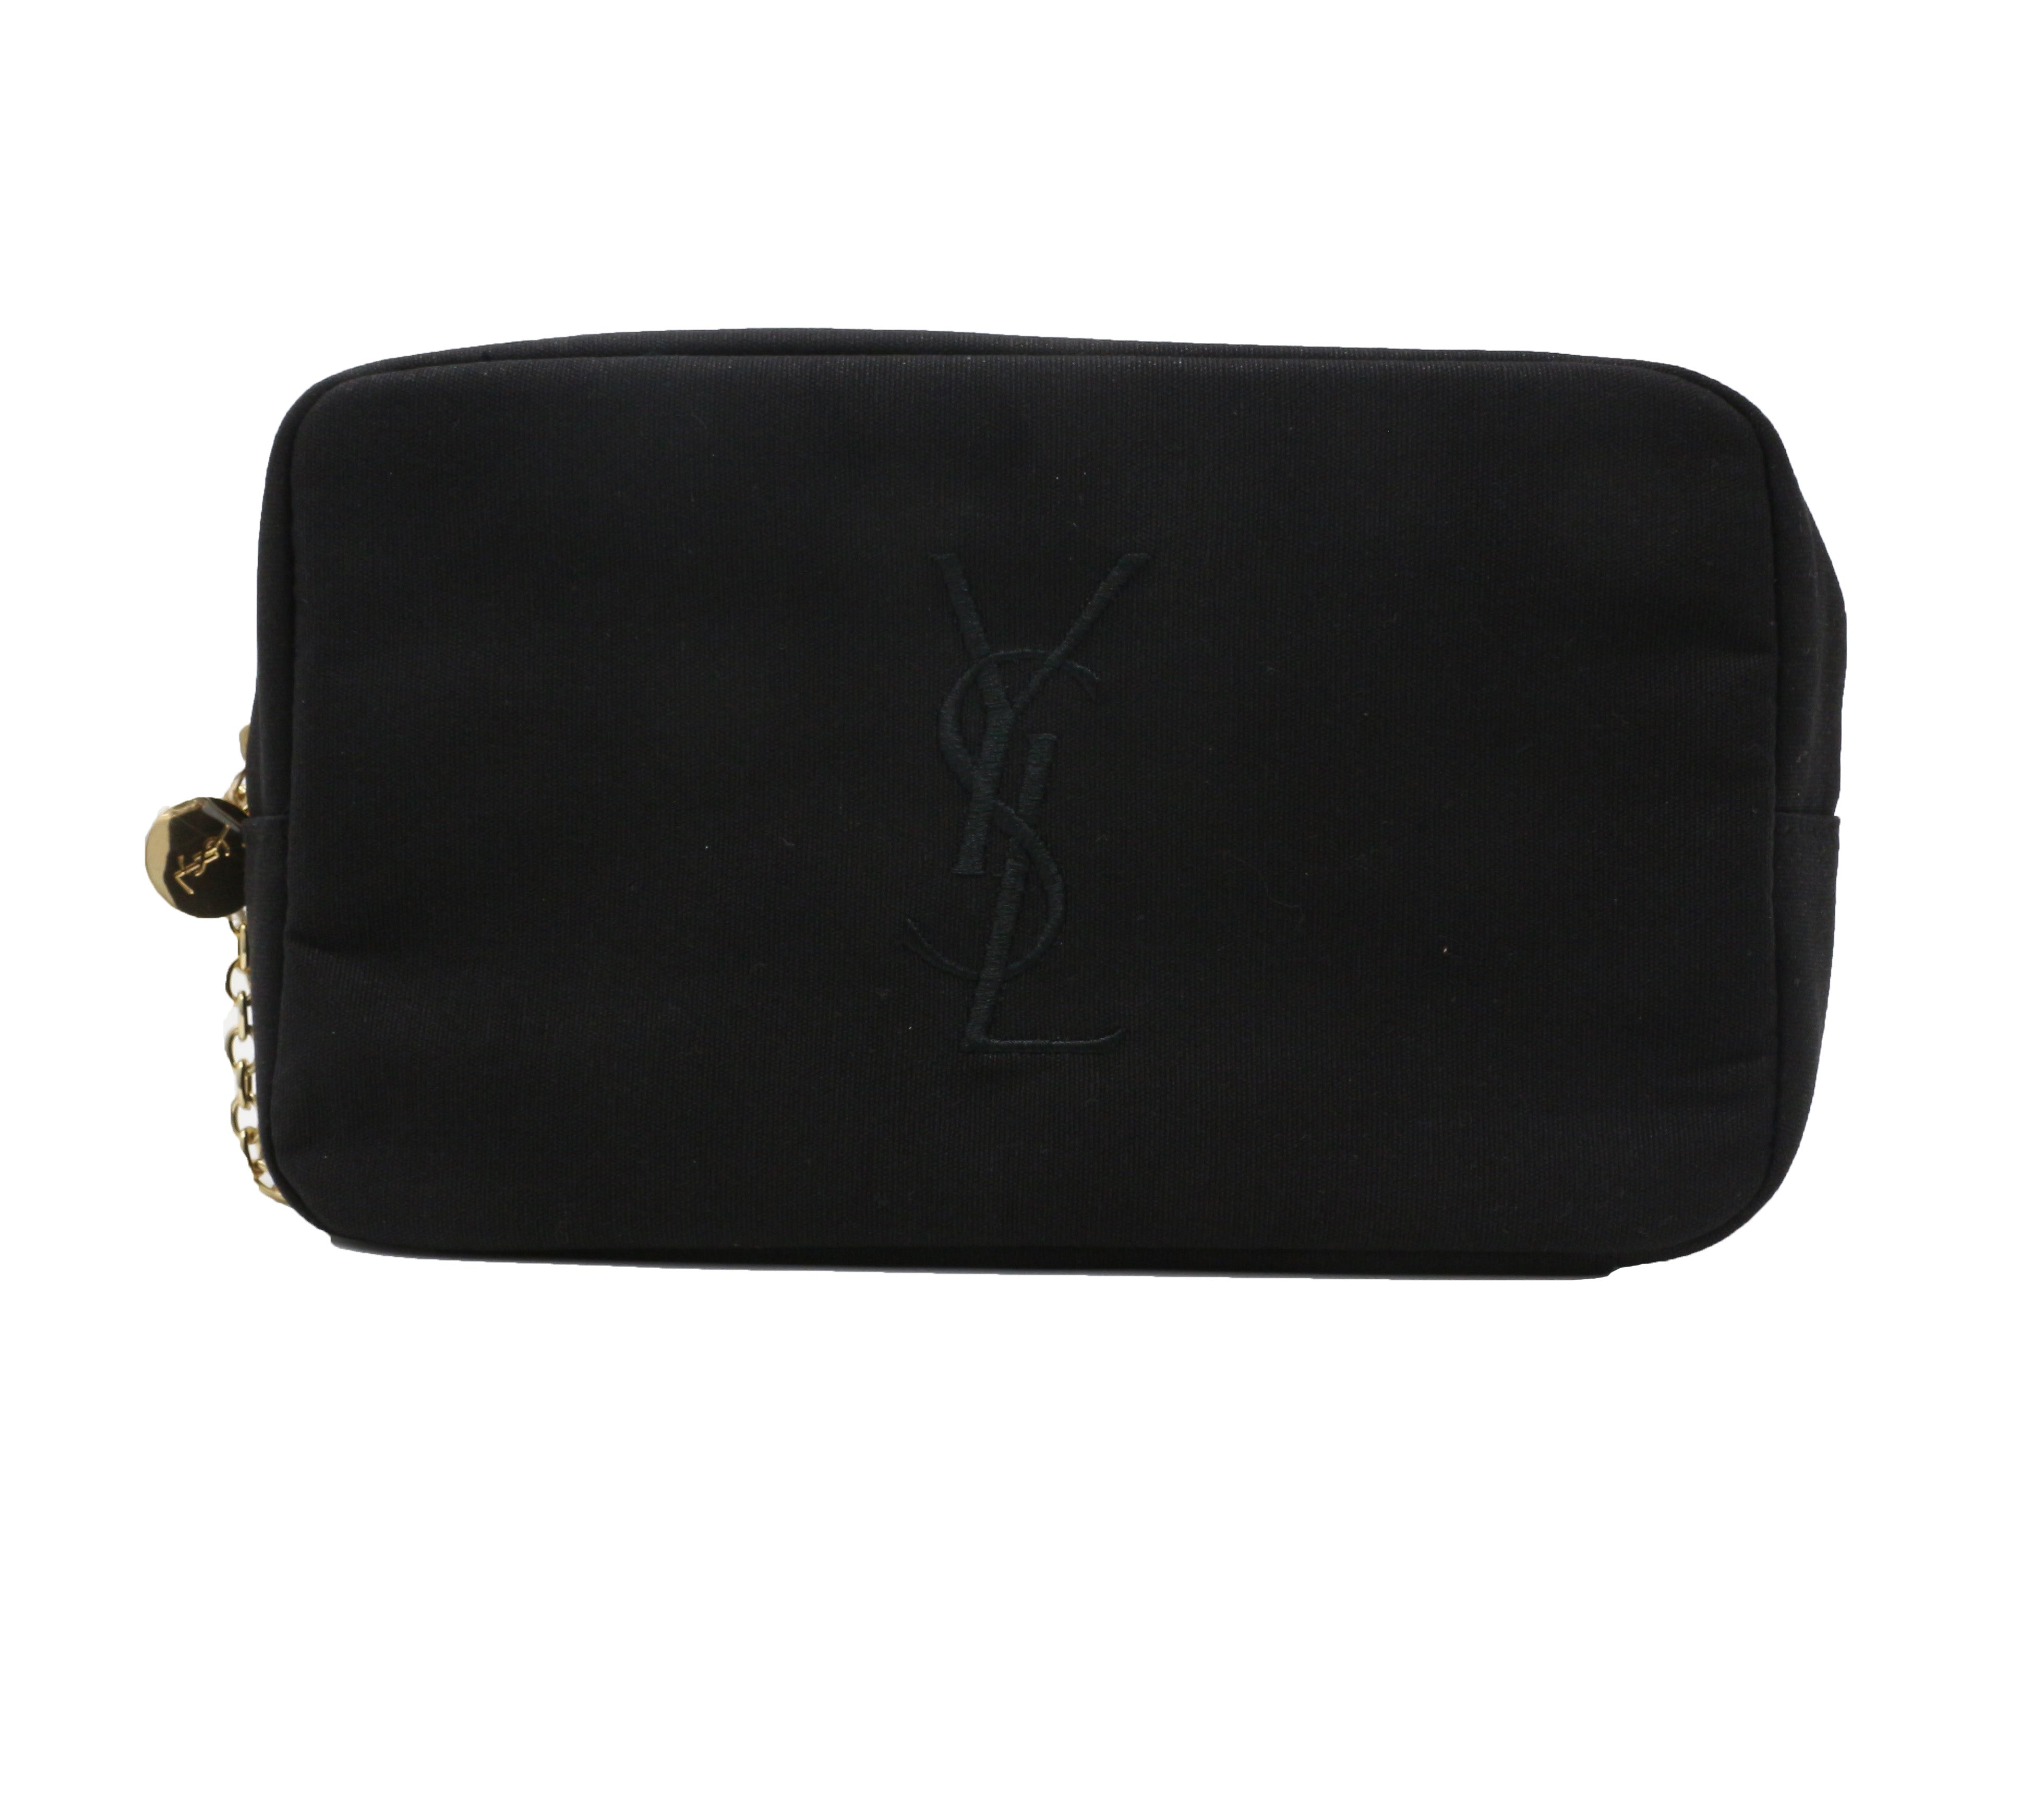 YSL Makeup Bag  Yves Saint Laurent Beaute Trousse Cosmetic Bag